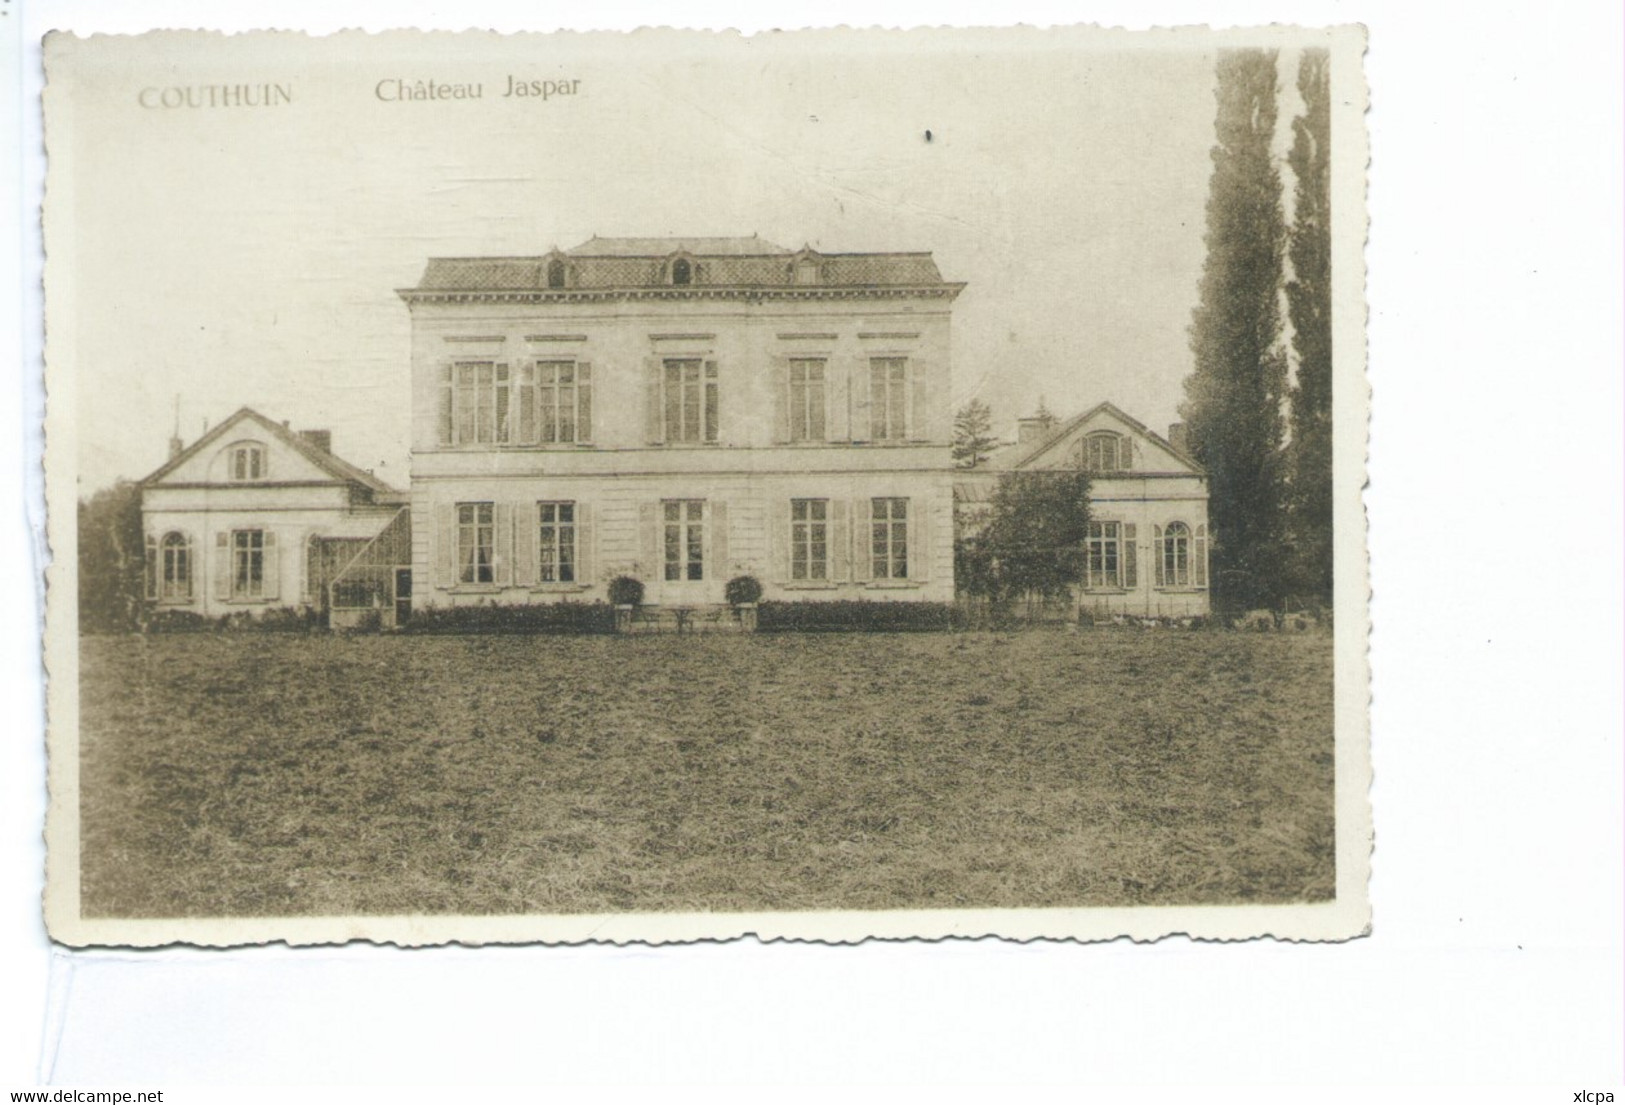 Couthuin Château Jaspar - Heron